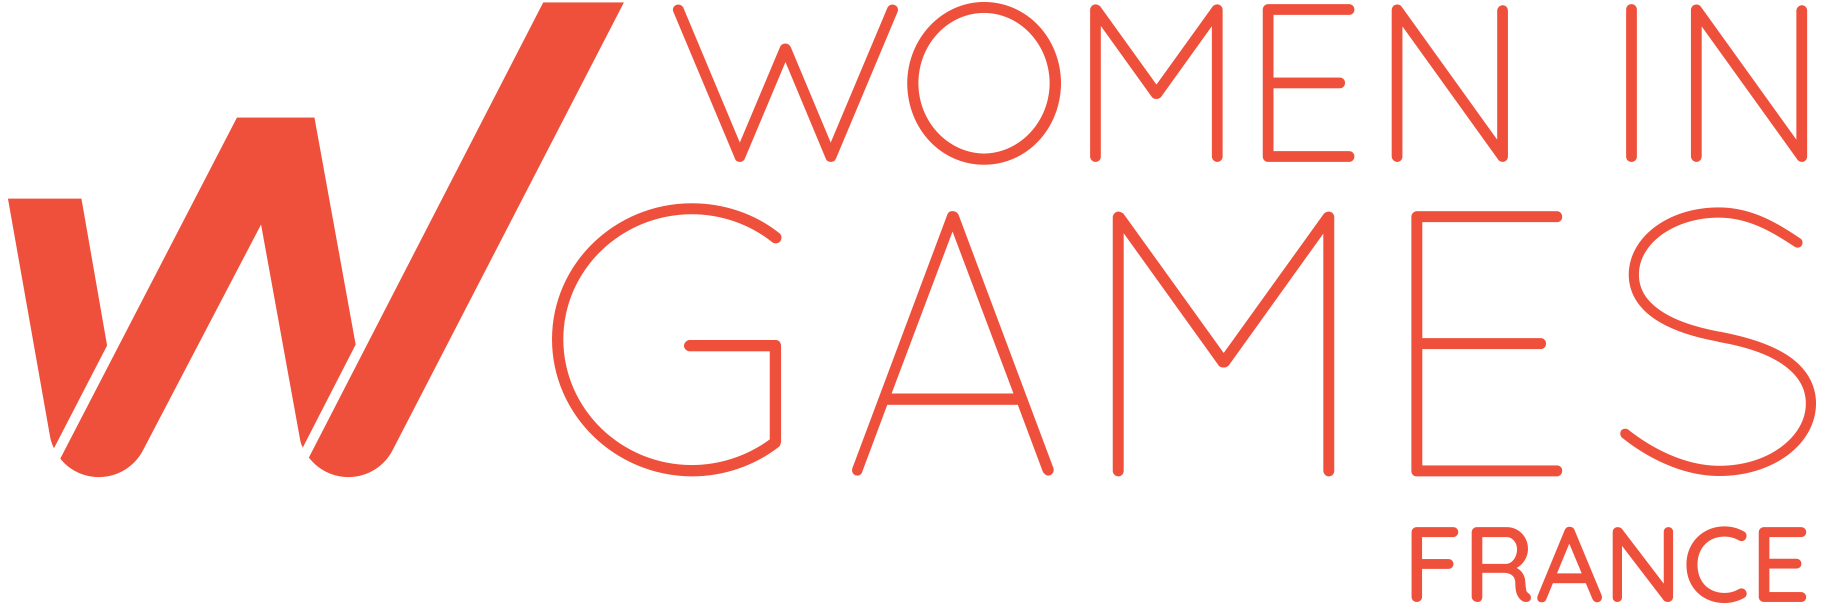 Site web de Women in Games France (nouvelle fenêtre)